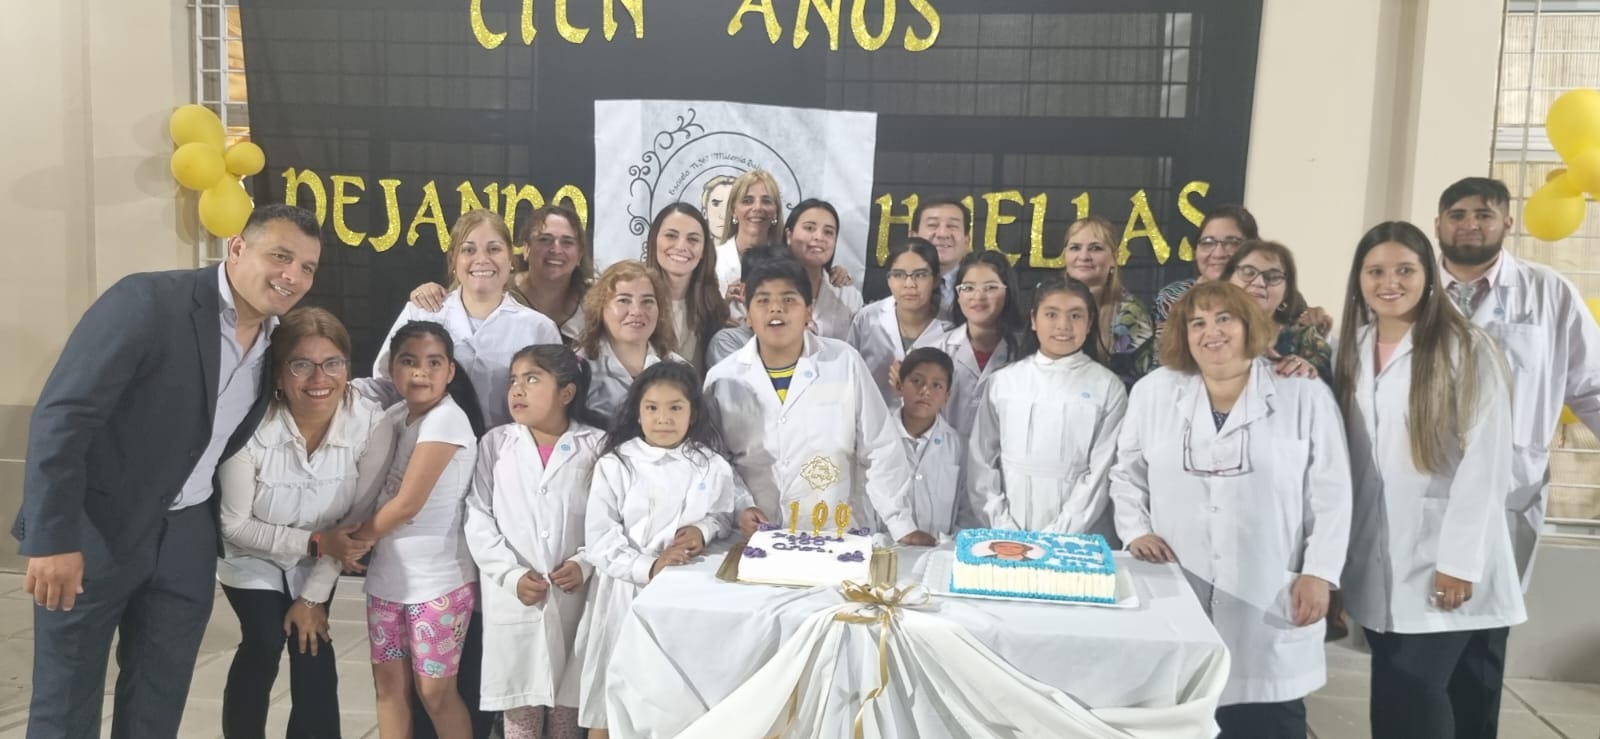 La Escuela N367 Midemia Taire de Taire  de Santa Cruz celebro su centenario